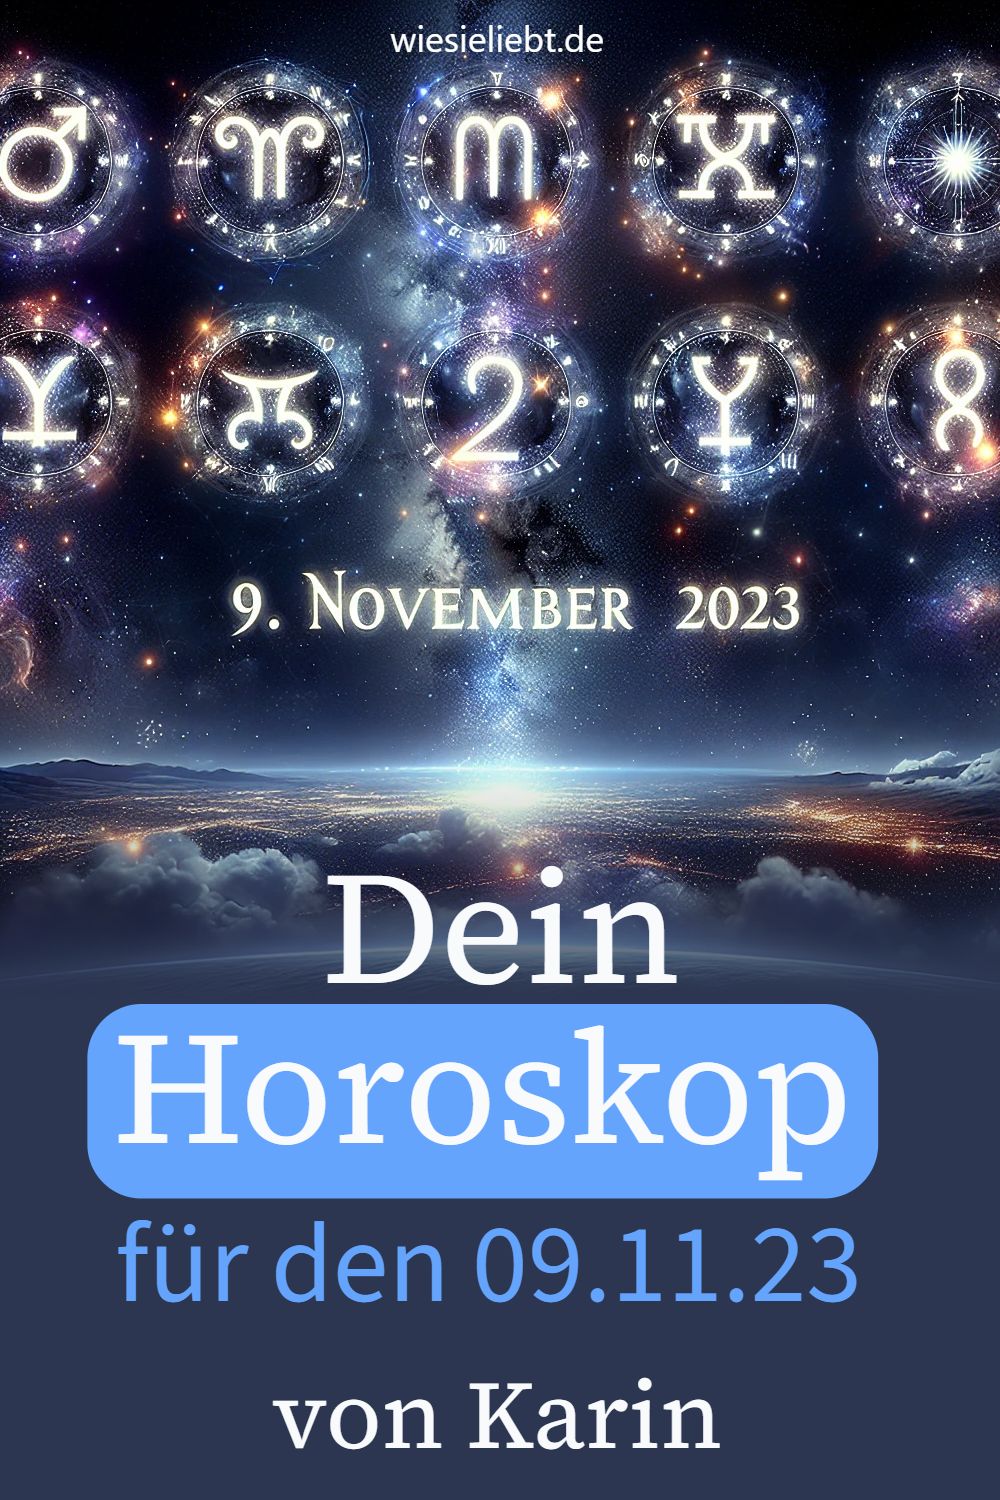 Dein tägliches Horoskop von Karin für den 09. November 2023.